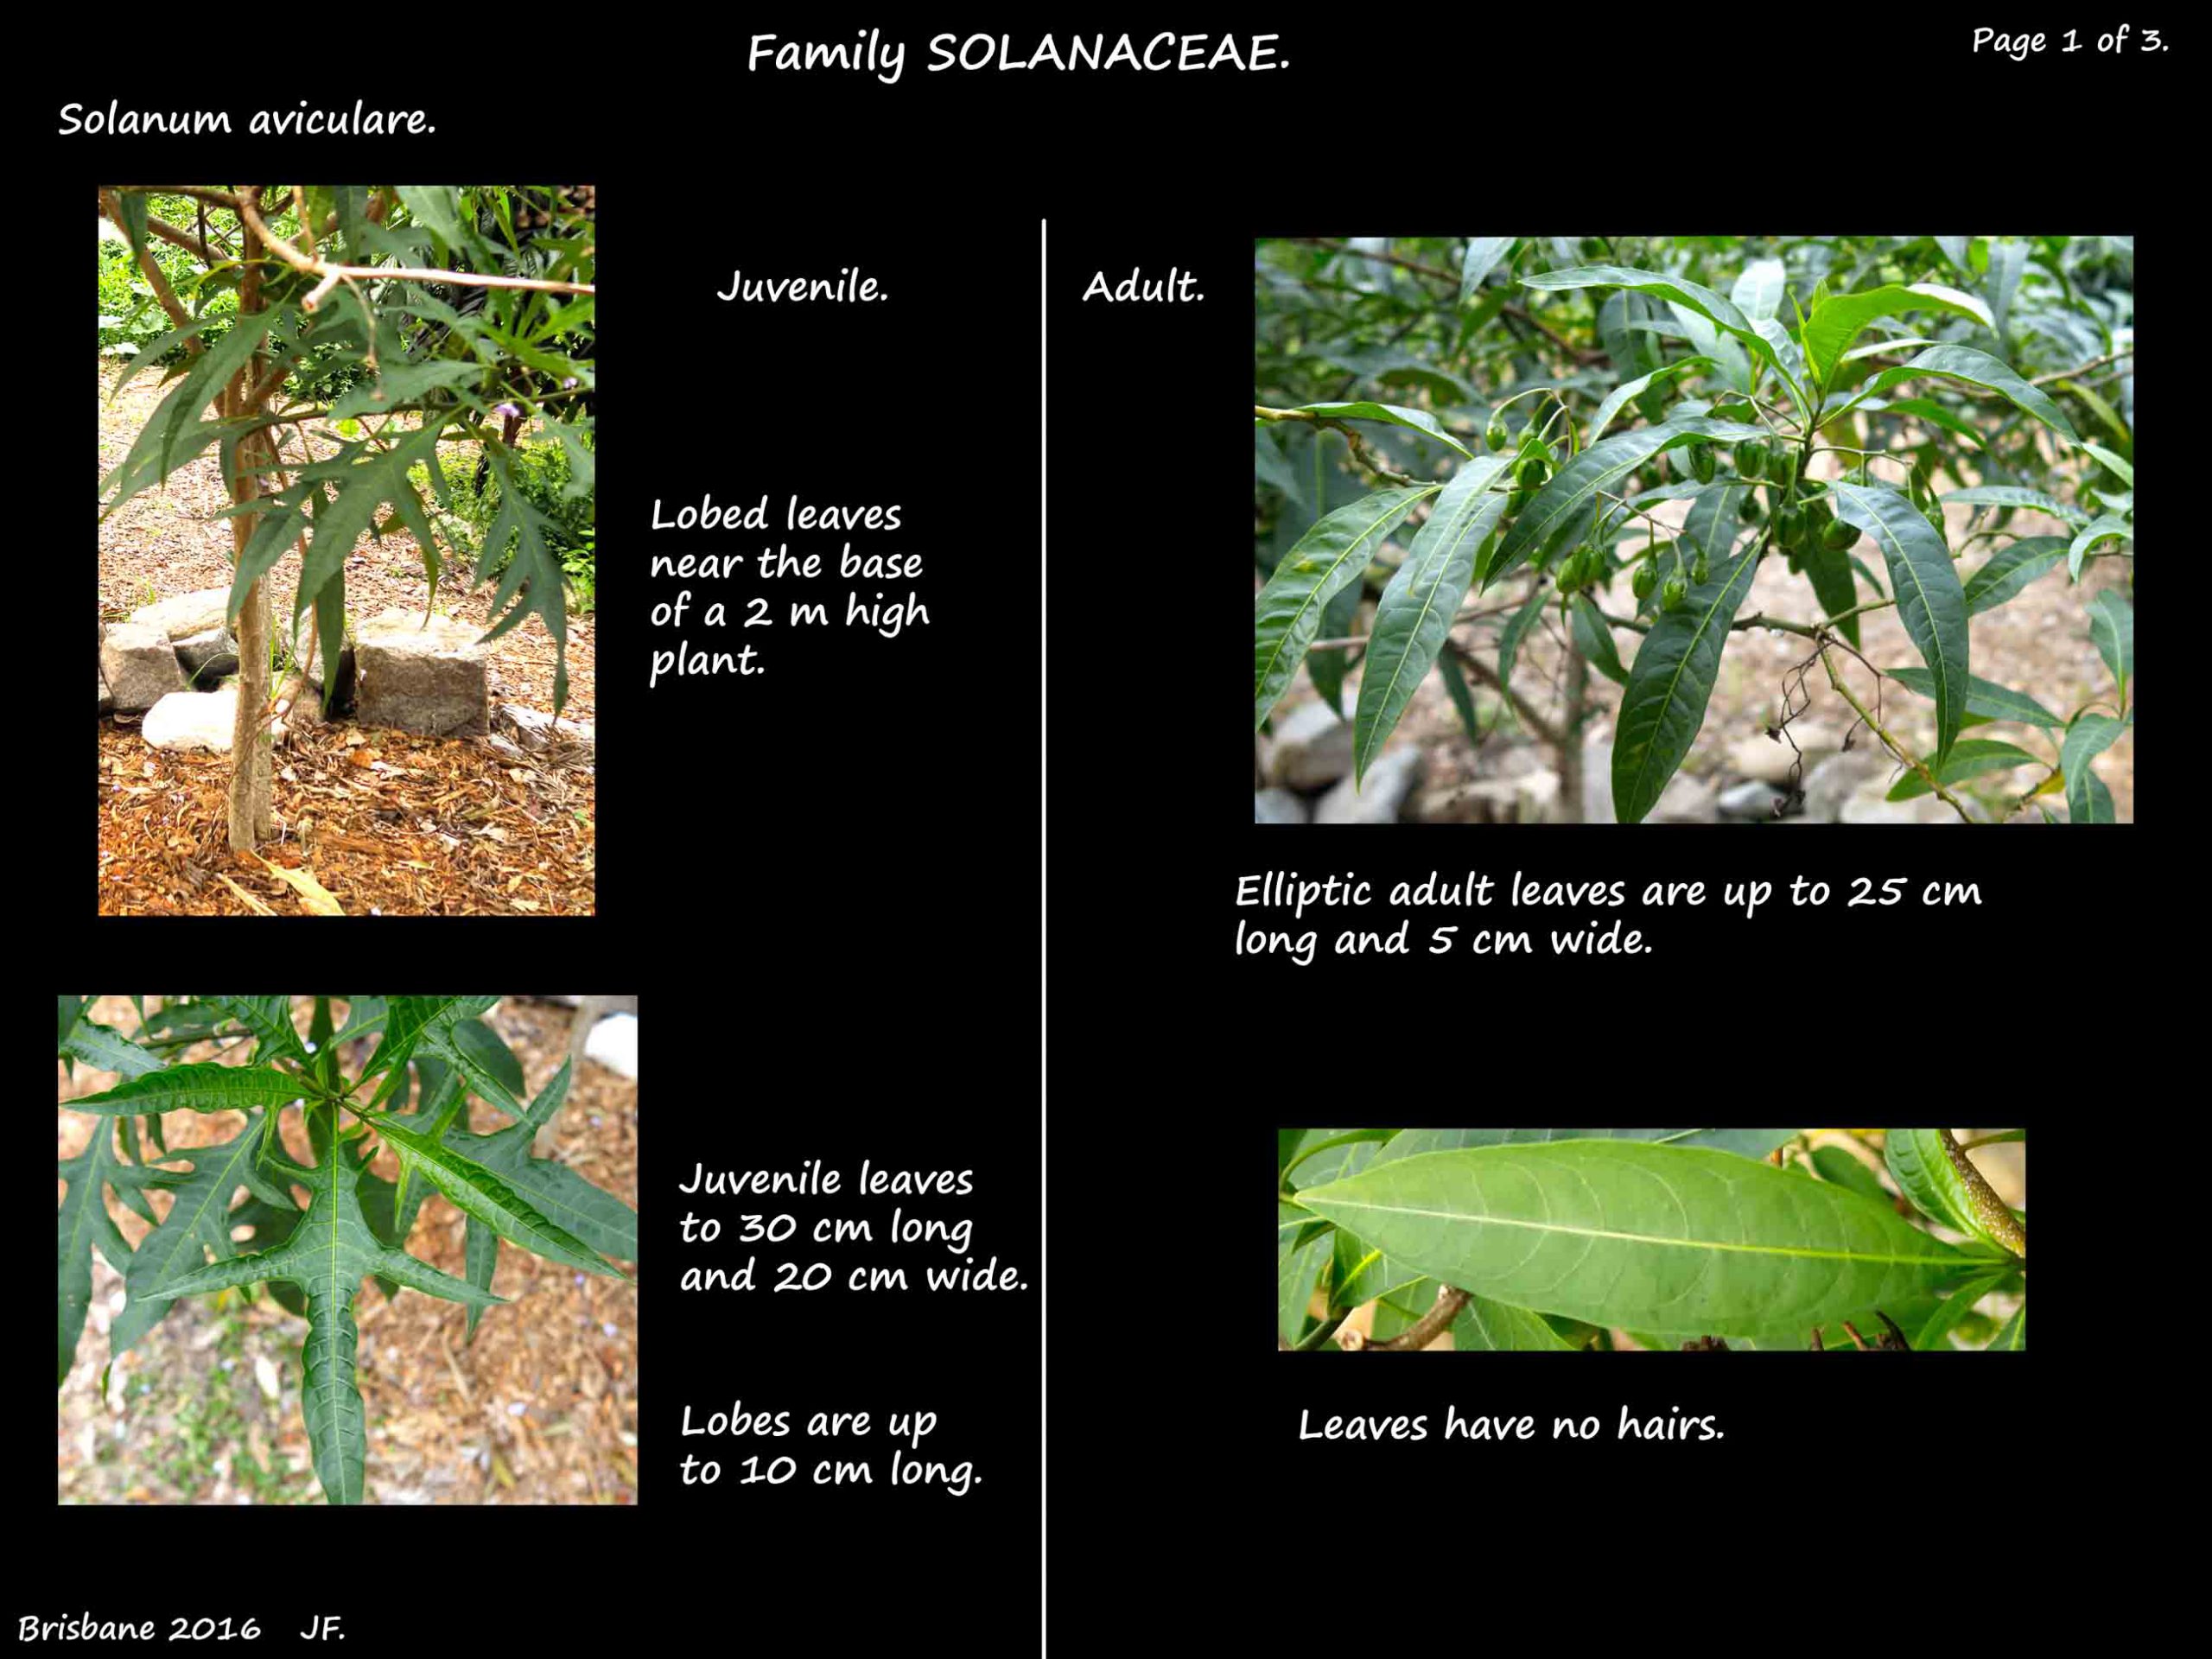 1 Solanum aviculare leaves